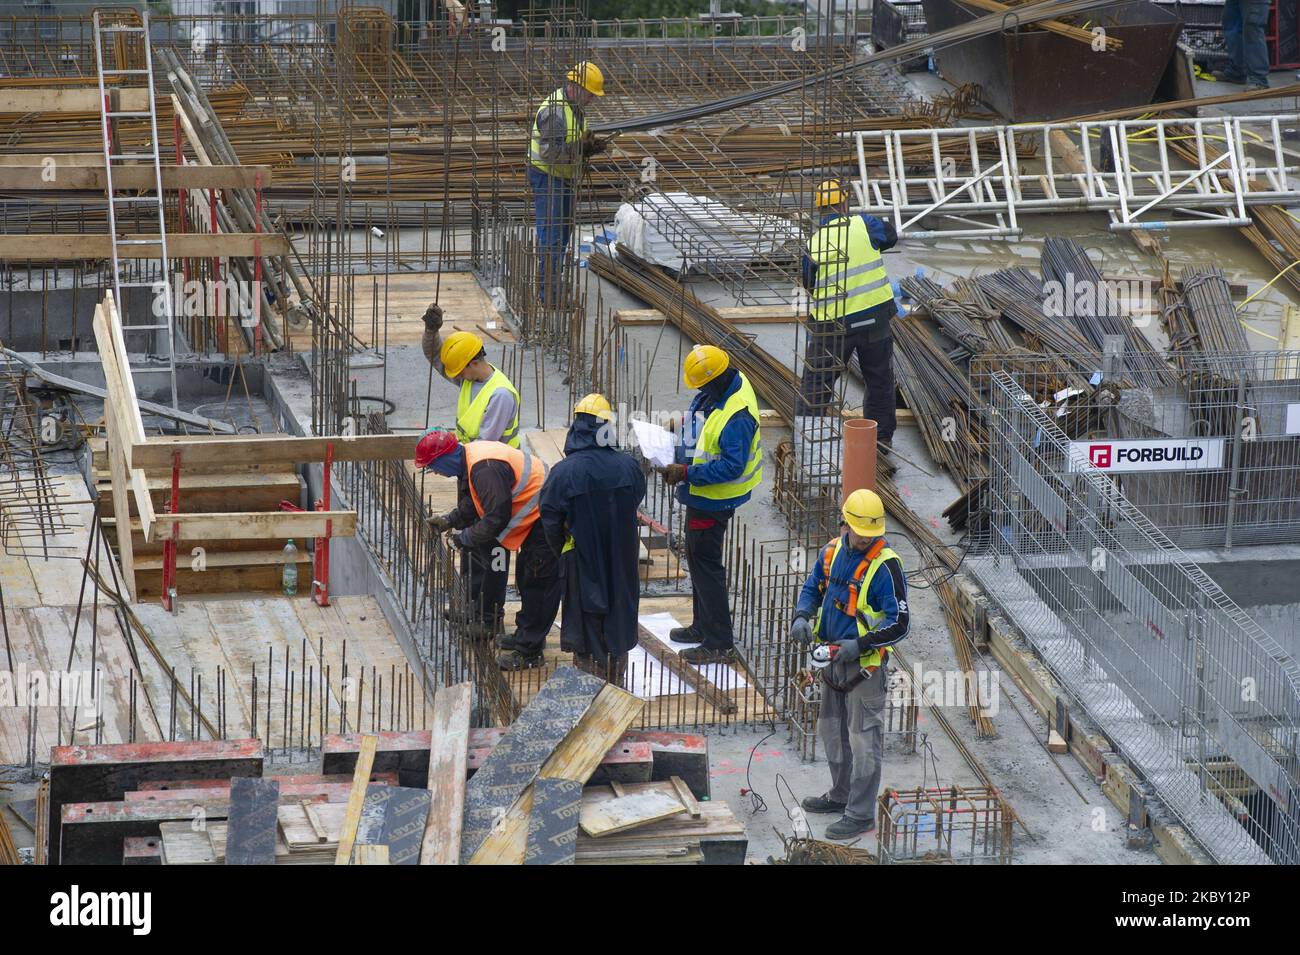 Los constructores son vistos en el sitio de trabajo de Skysawa el 2 de septiembre de 2020 en Varsovia, Polonia. Skysawa es un proyecto de oficinas de clase A de gran altura que ofrecerá aproximadamente un total de 39,000 metros cuadrados de espacio de trabajo. La fecha límite de construcción es alrededor de las Q2 2022. (Foto de Aleksander Kalka/NurPhoto) Foto de stock